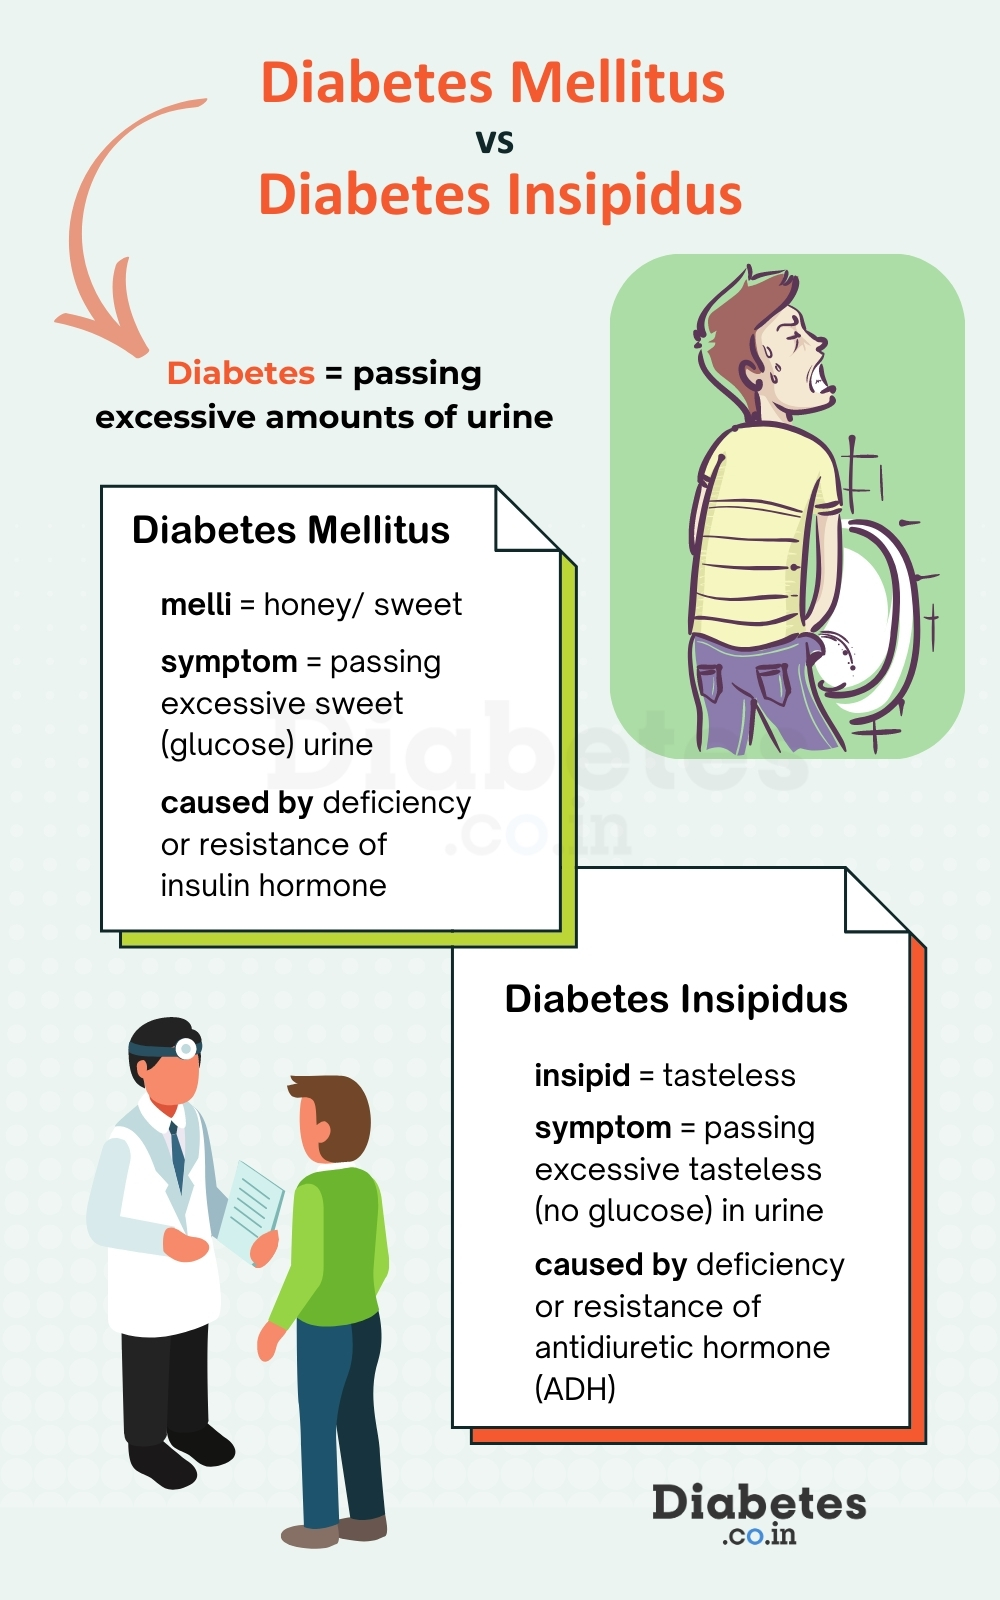 A diabetes insipidus jellemzői